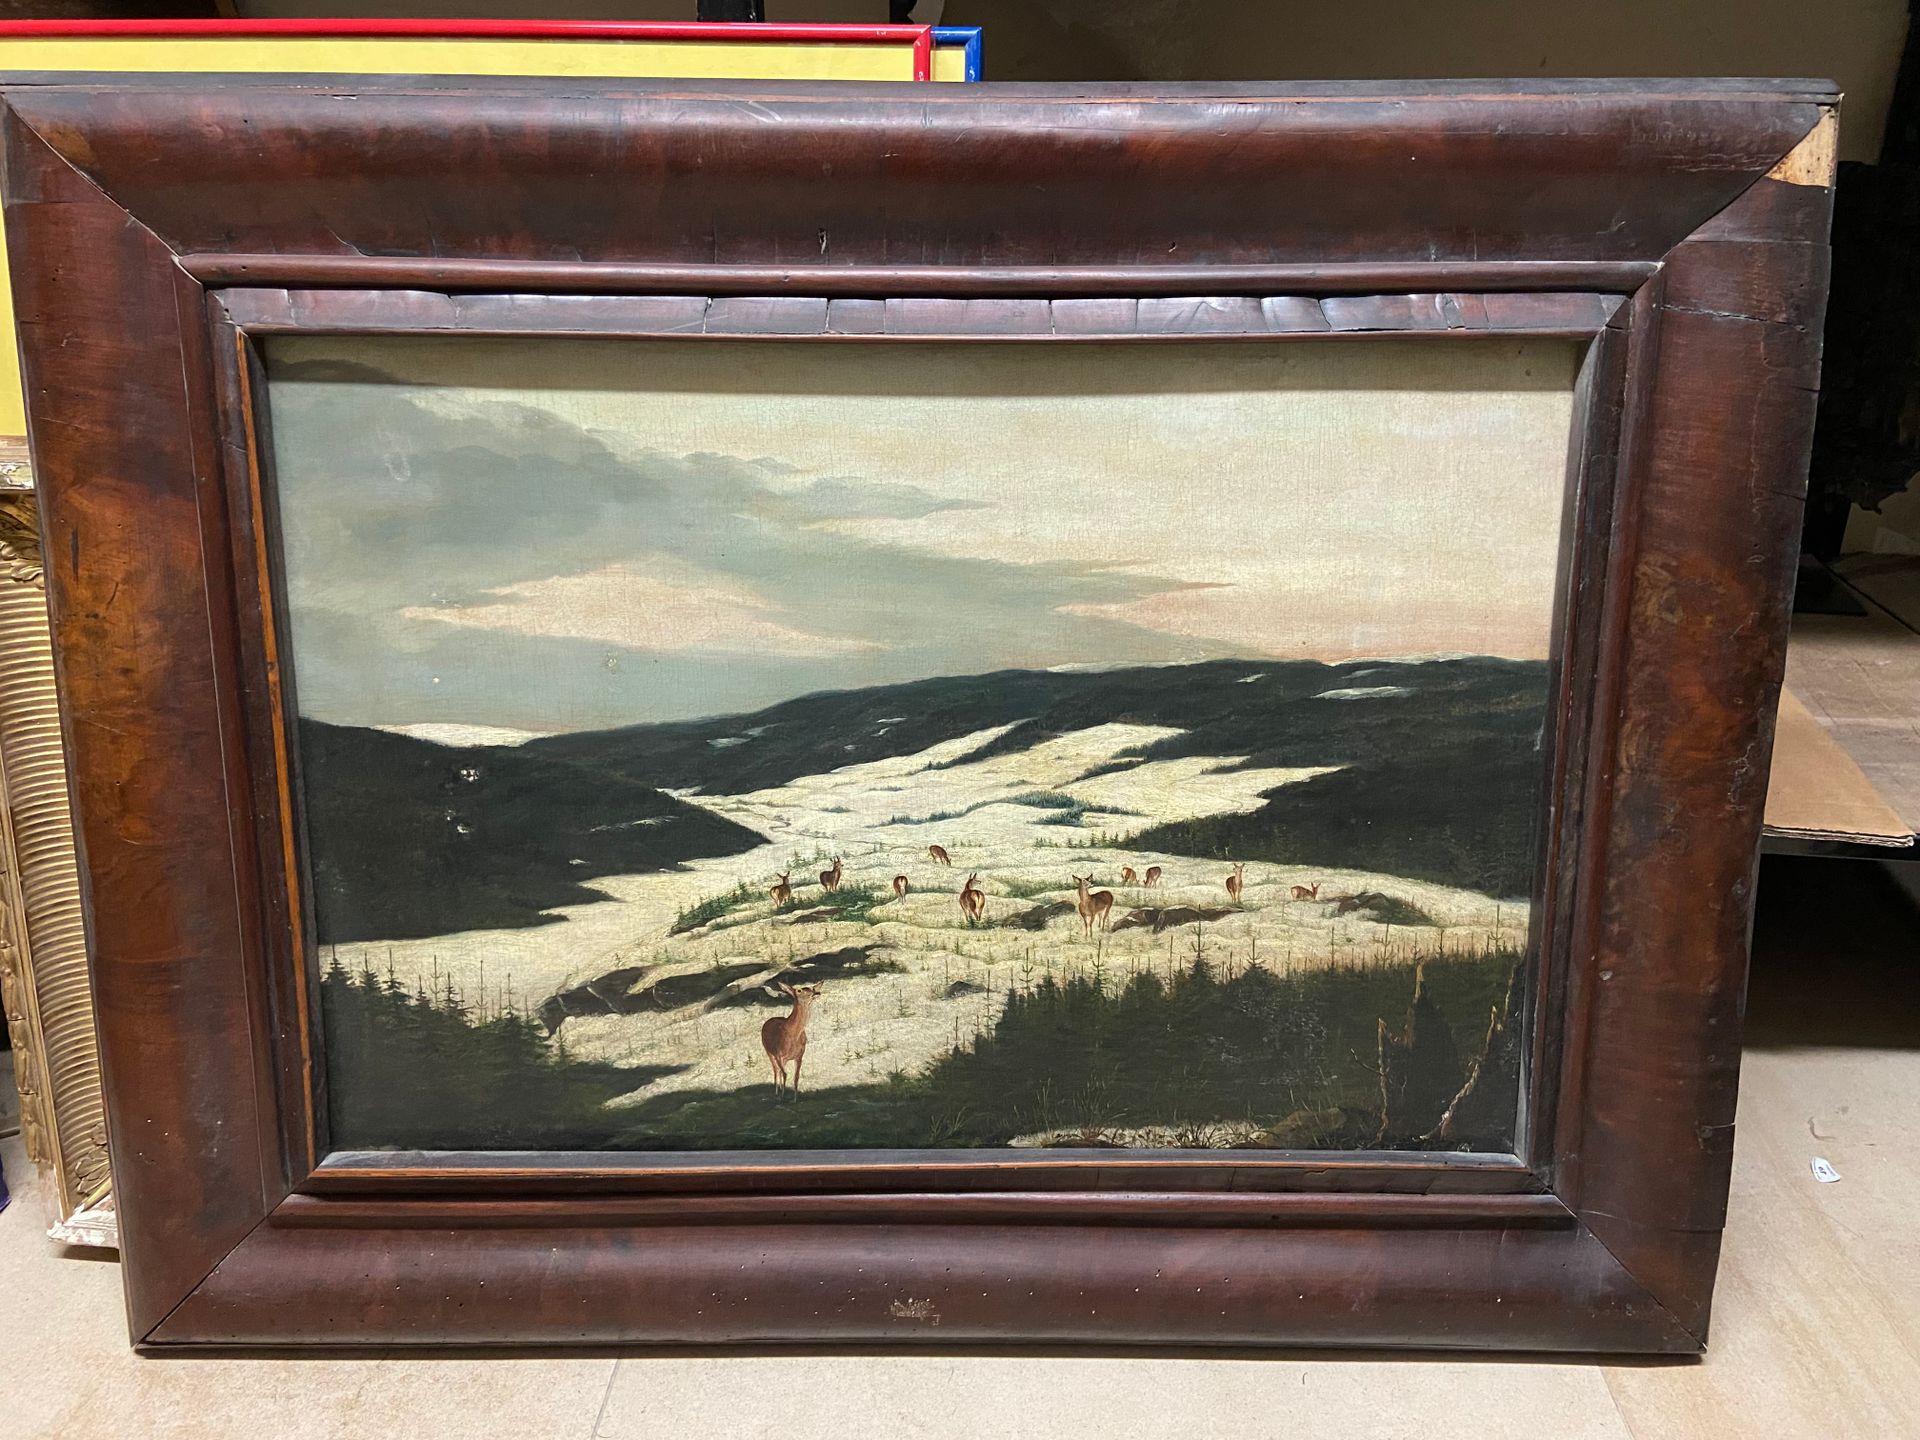 Null ESCUELA DE INGLÉS

Ciervos en la nieve

Óleo sobre lienzo

50 x 73 cm

En u&hellip;